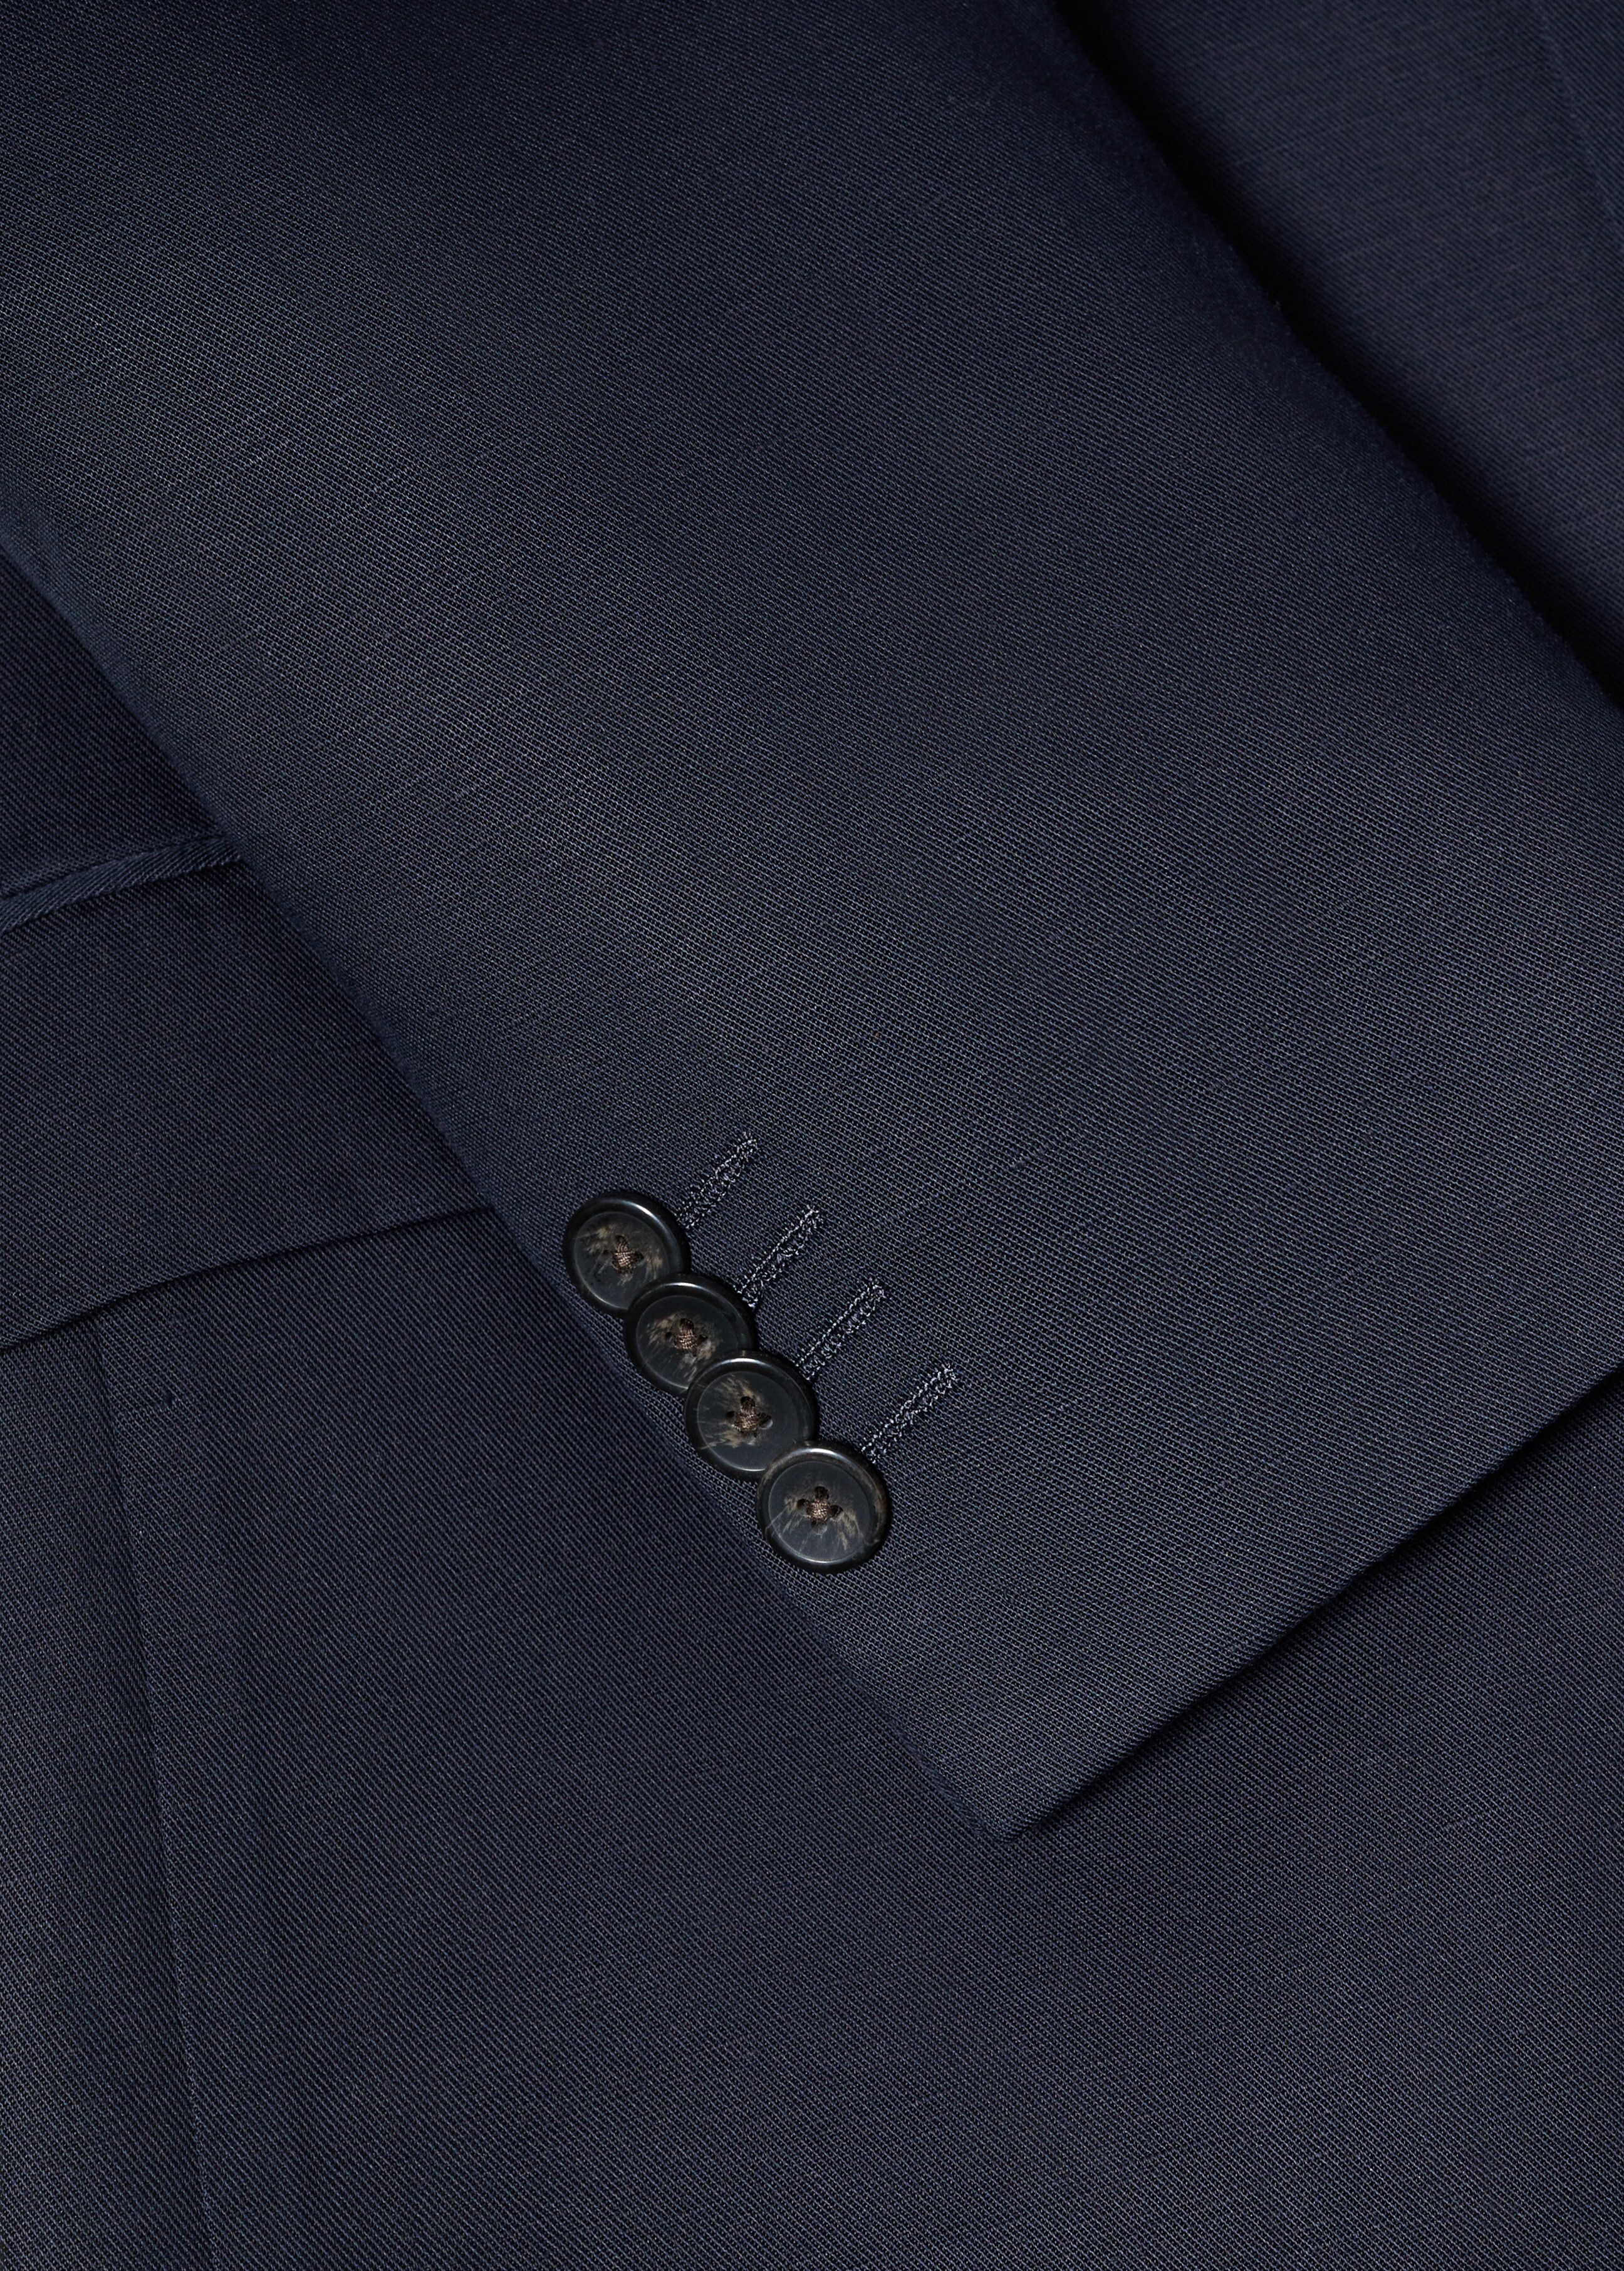 Slim fit linen suit blazer - Details of the article 8